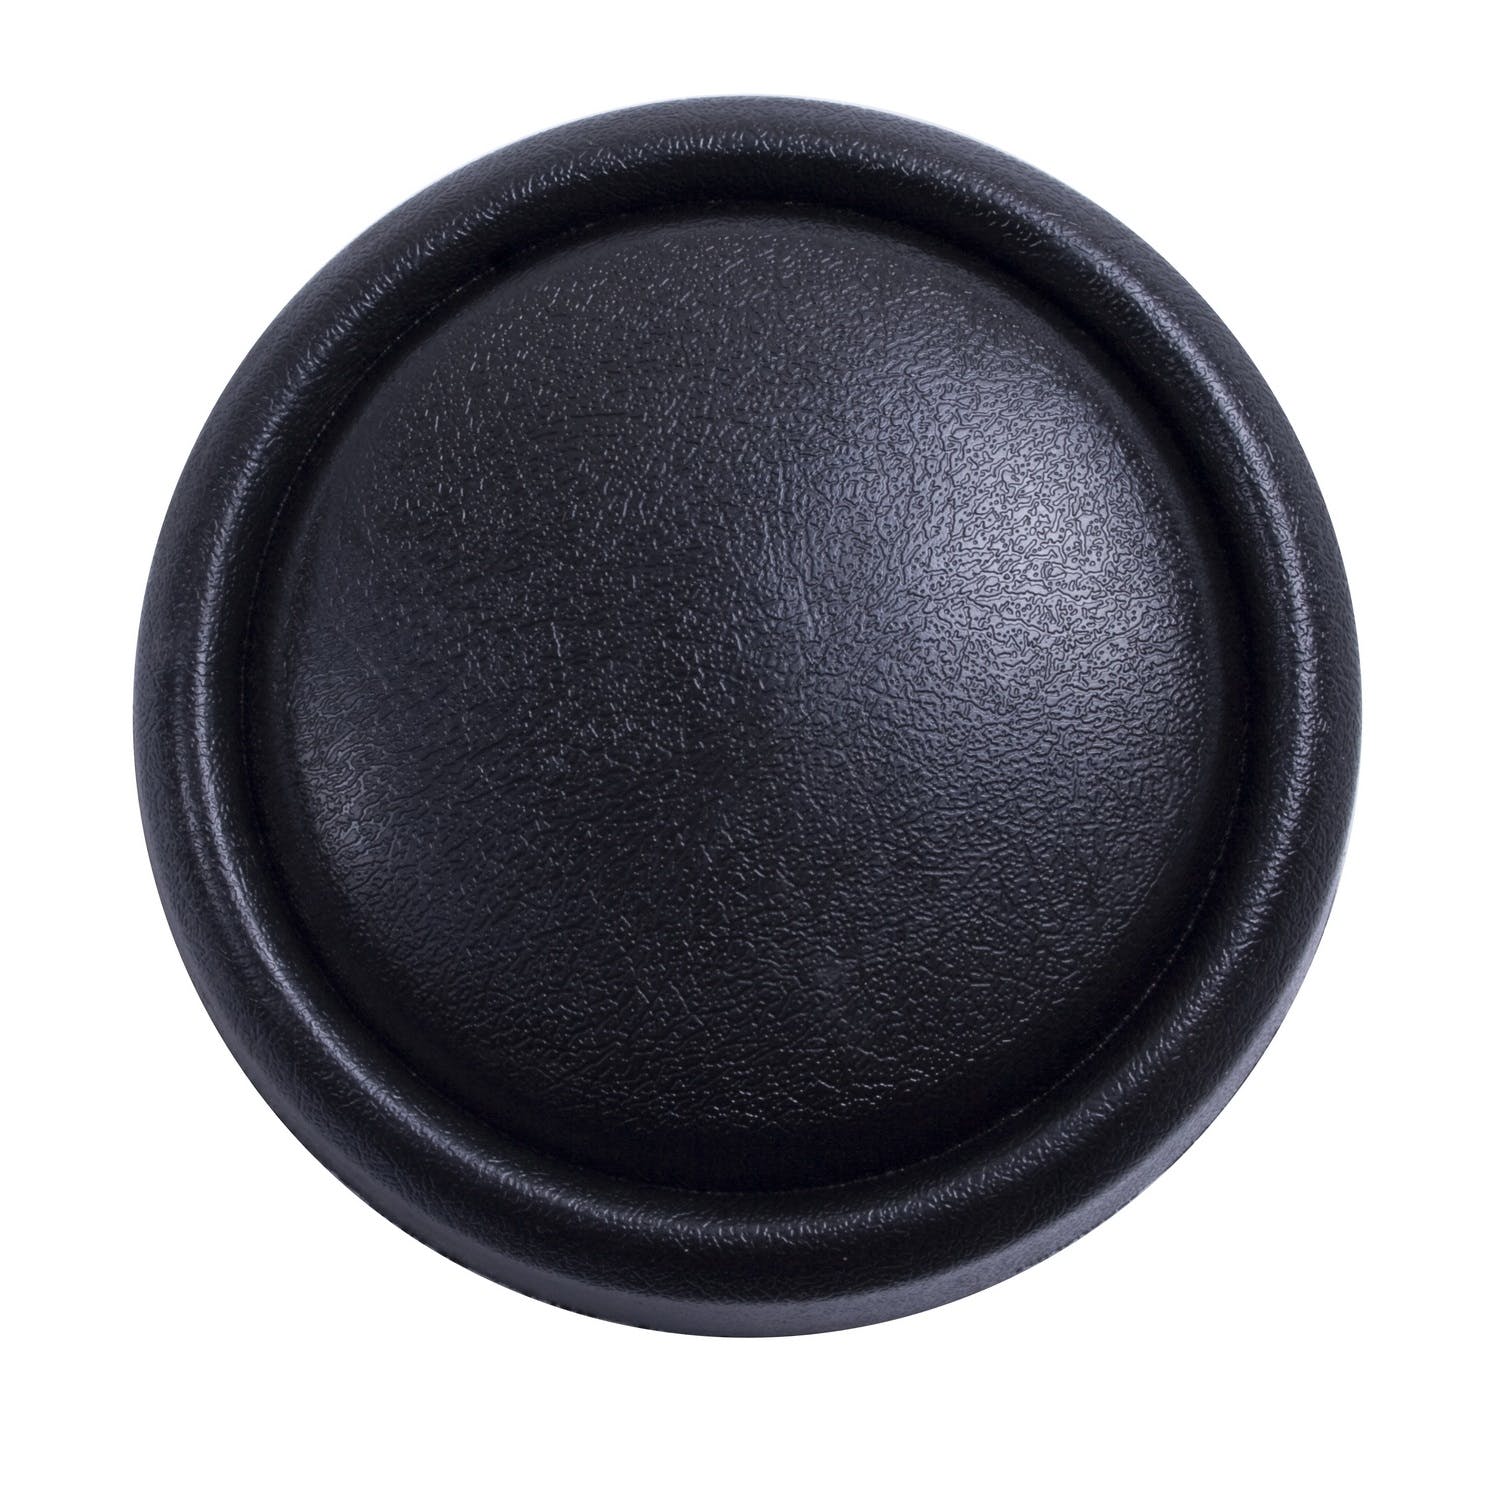 Omix-ADA 18033.01 Black Horn Button